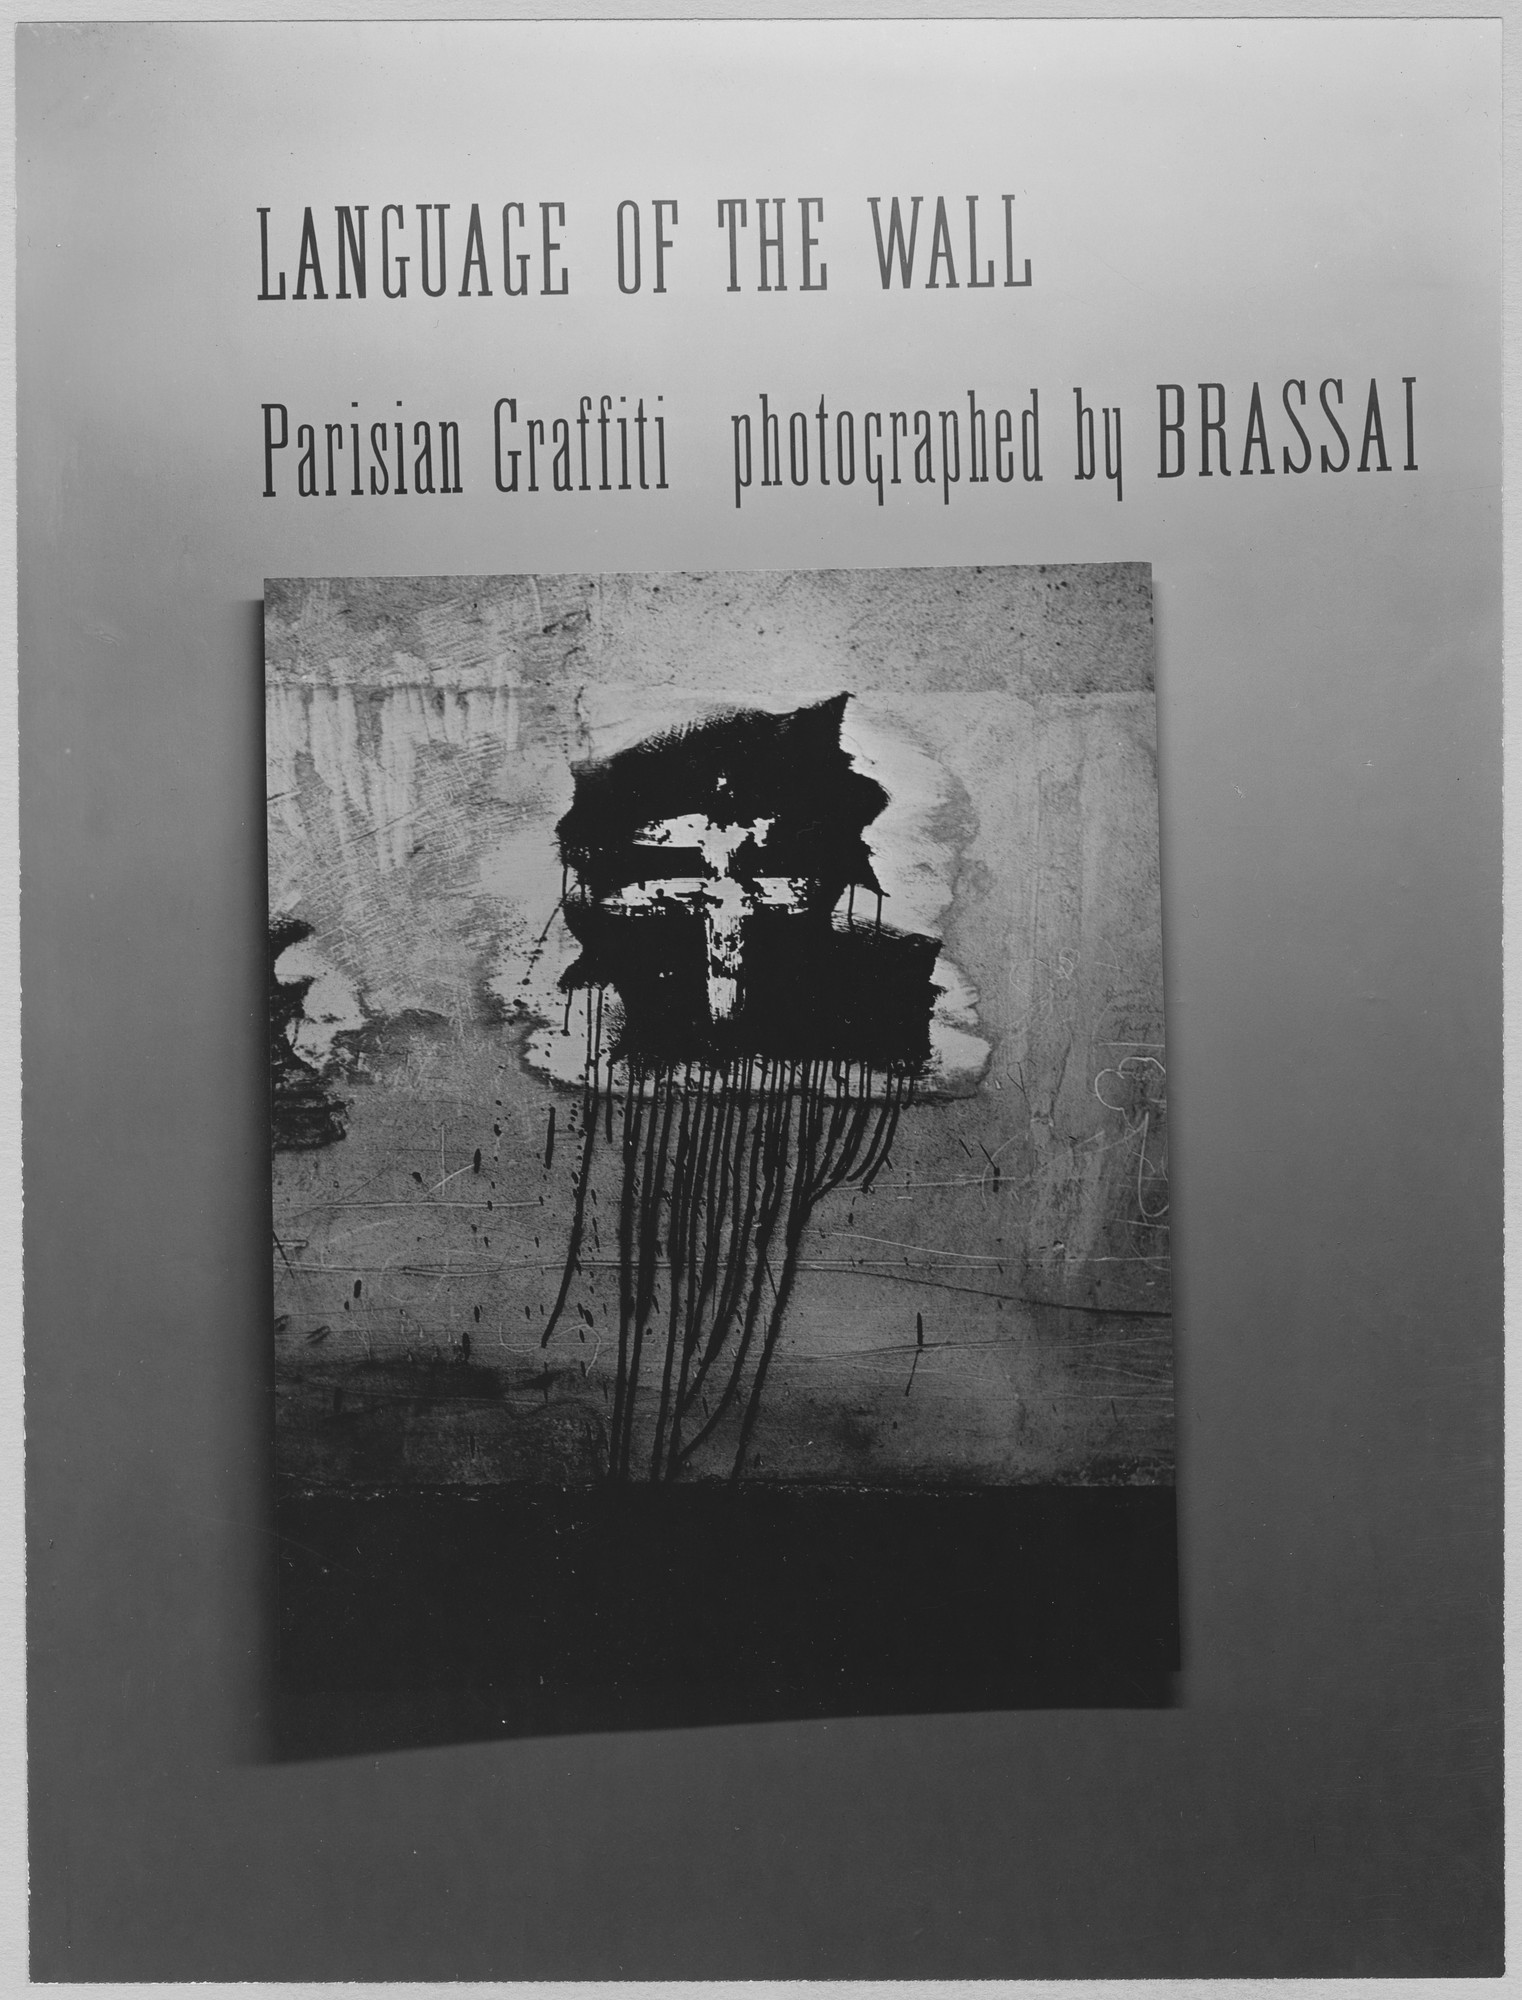 特価正規店42149/ブラッサイ 写真集 Brassai Graffiti 1960年 Chr Belser Verlag パリの壁に描かれた壁画のモノクロ写真集 フランス・パリの写真家 アート写真